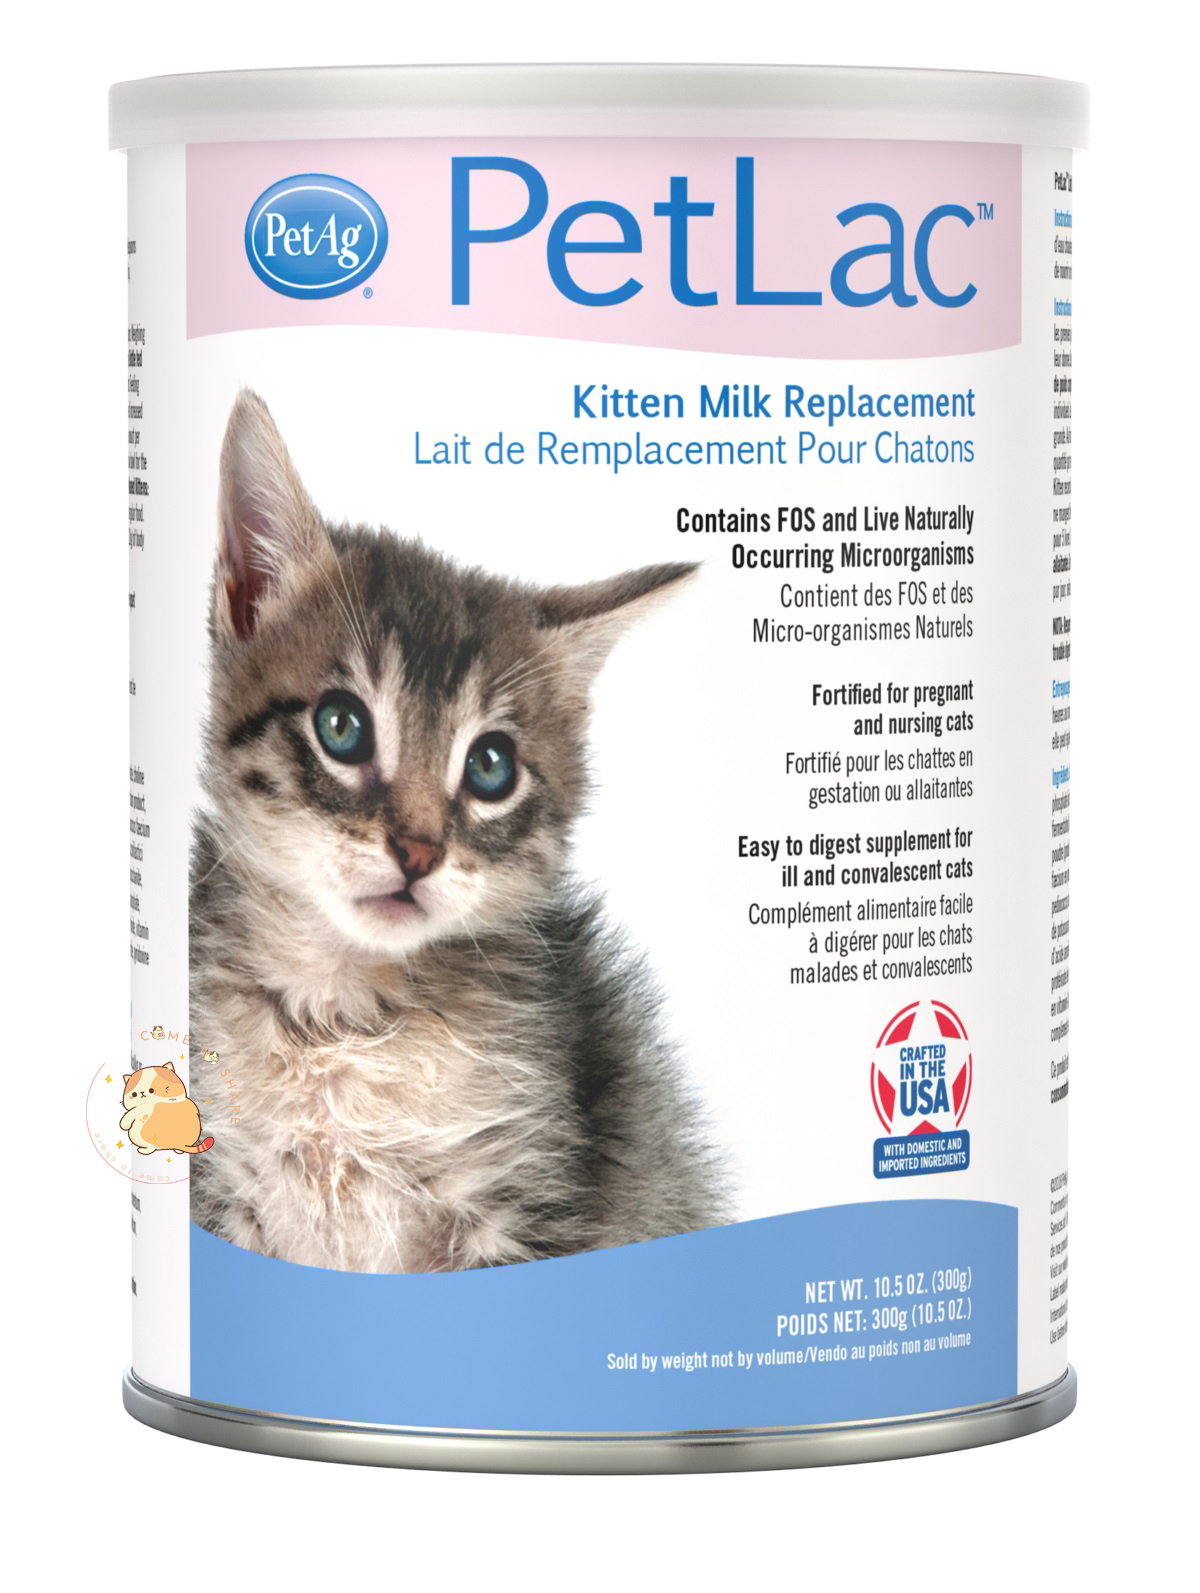 Sữa PetLac mang đến mèo con cái tới từ tên thương hiệu phổ biến PetAg của Mỹ